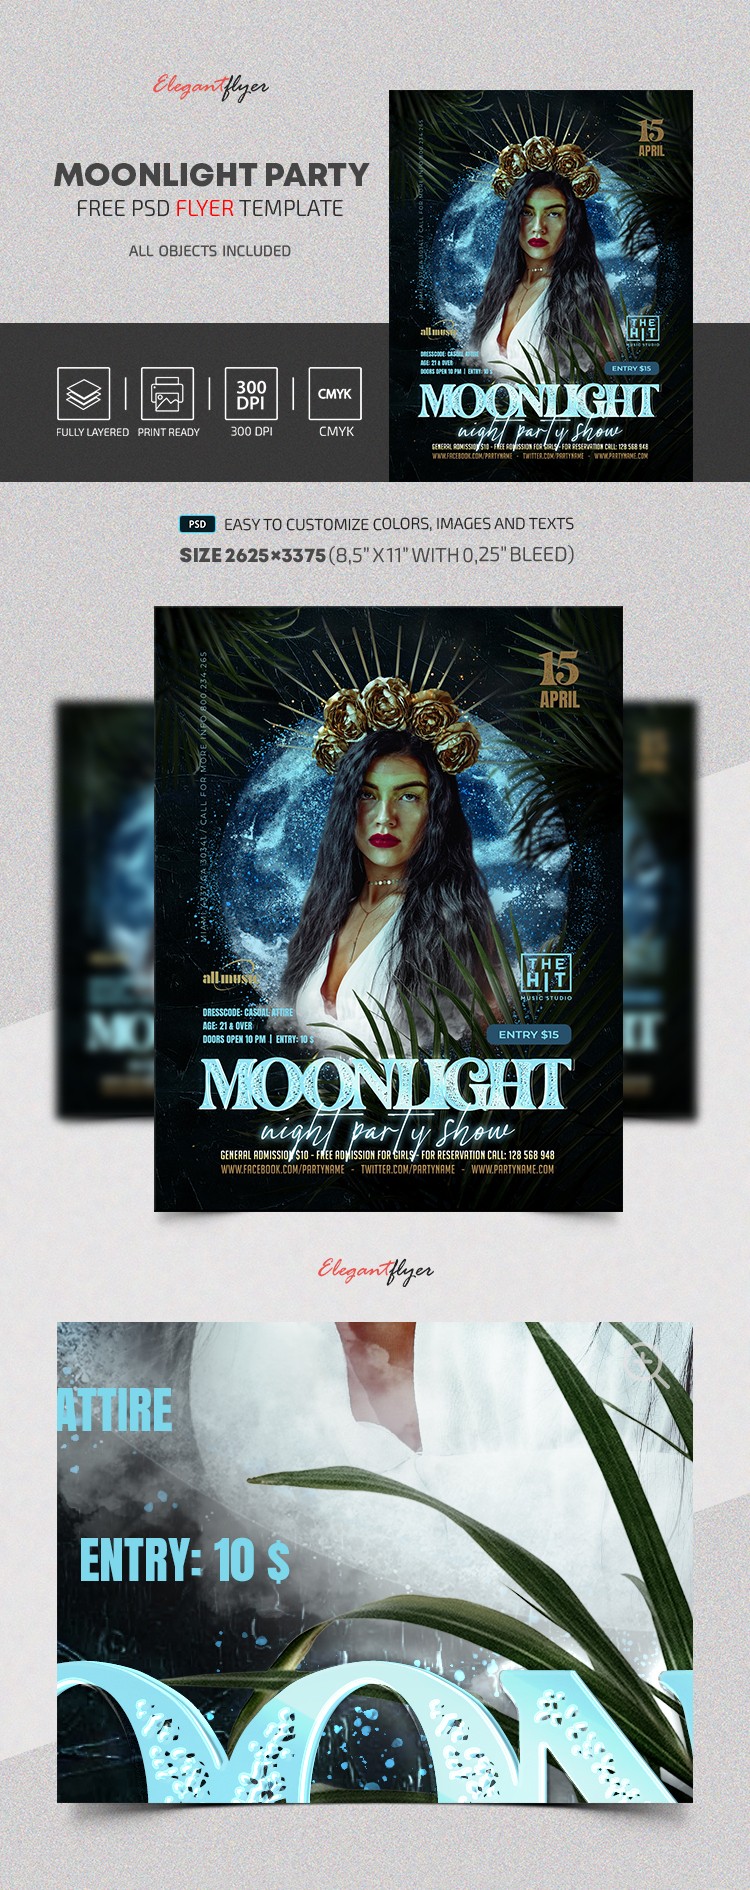 Moonlight Party Flyer by ElegantFlyer